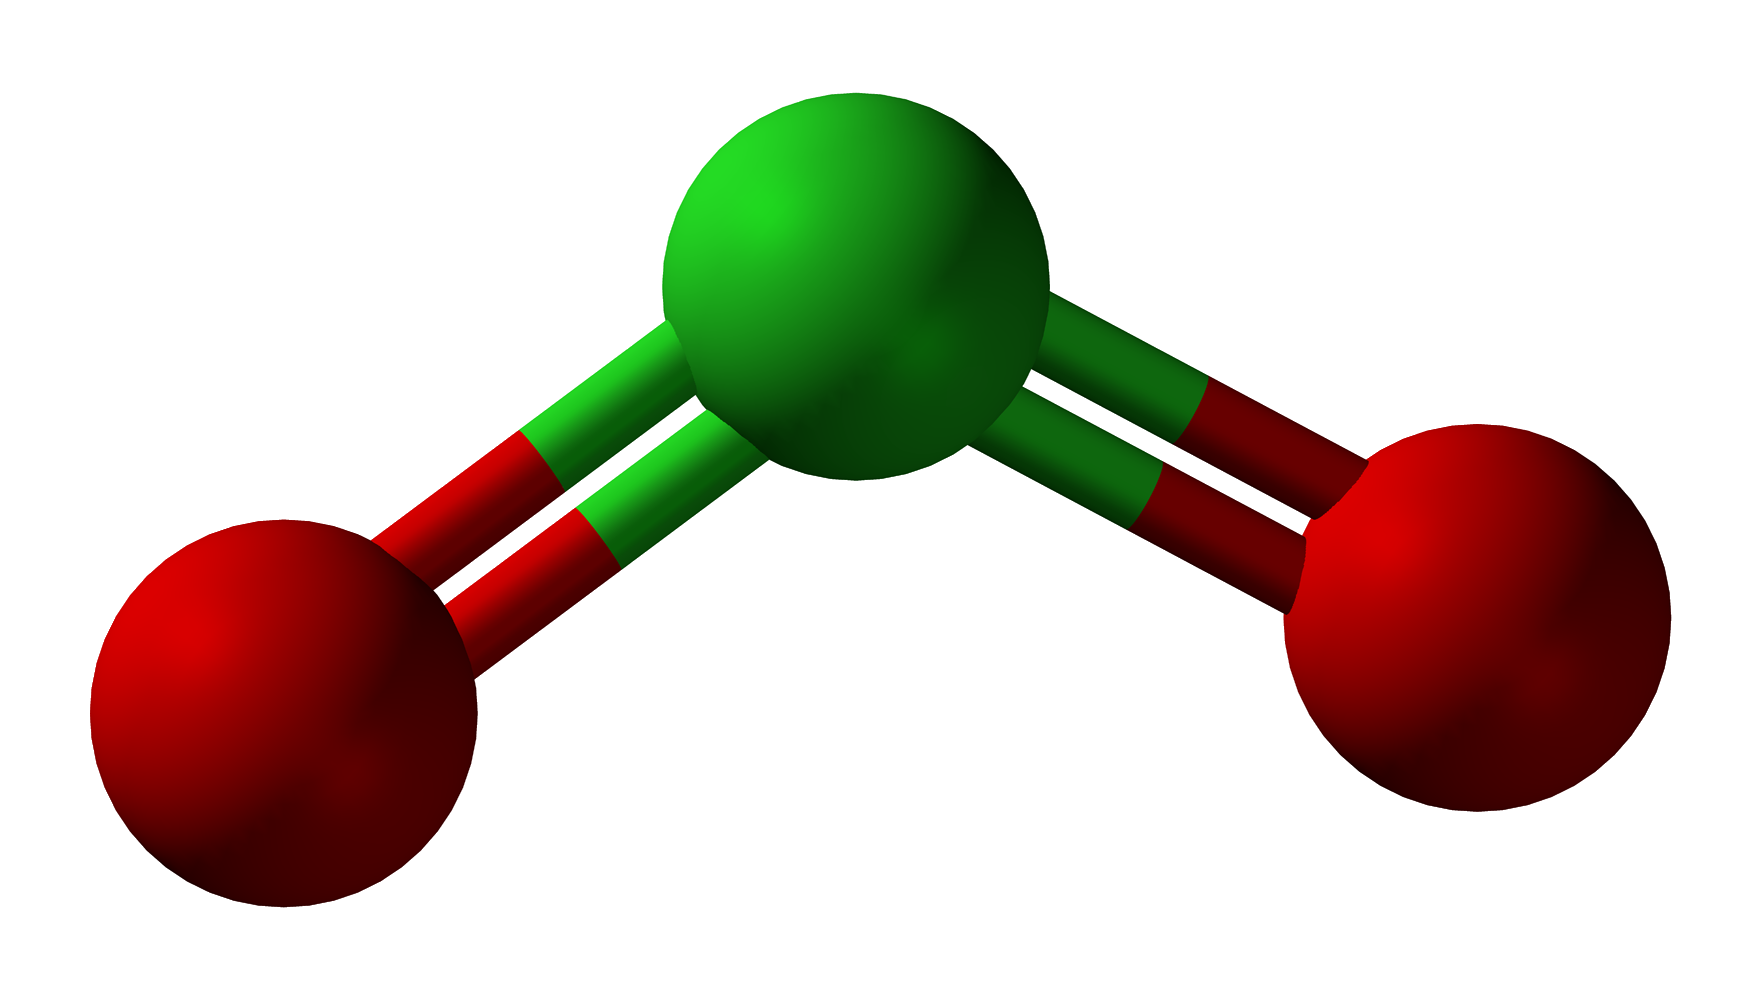 Диоксид серы (so2). Модель молекулы сернистого газаso2. Модель молекулы оксида серы 4. Диоксид серы so2 (сернистый ангидрид). So4 газ